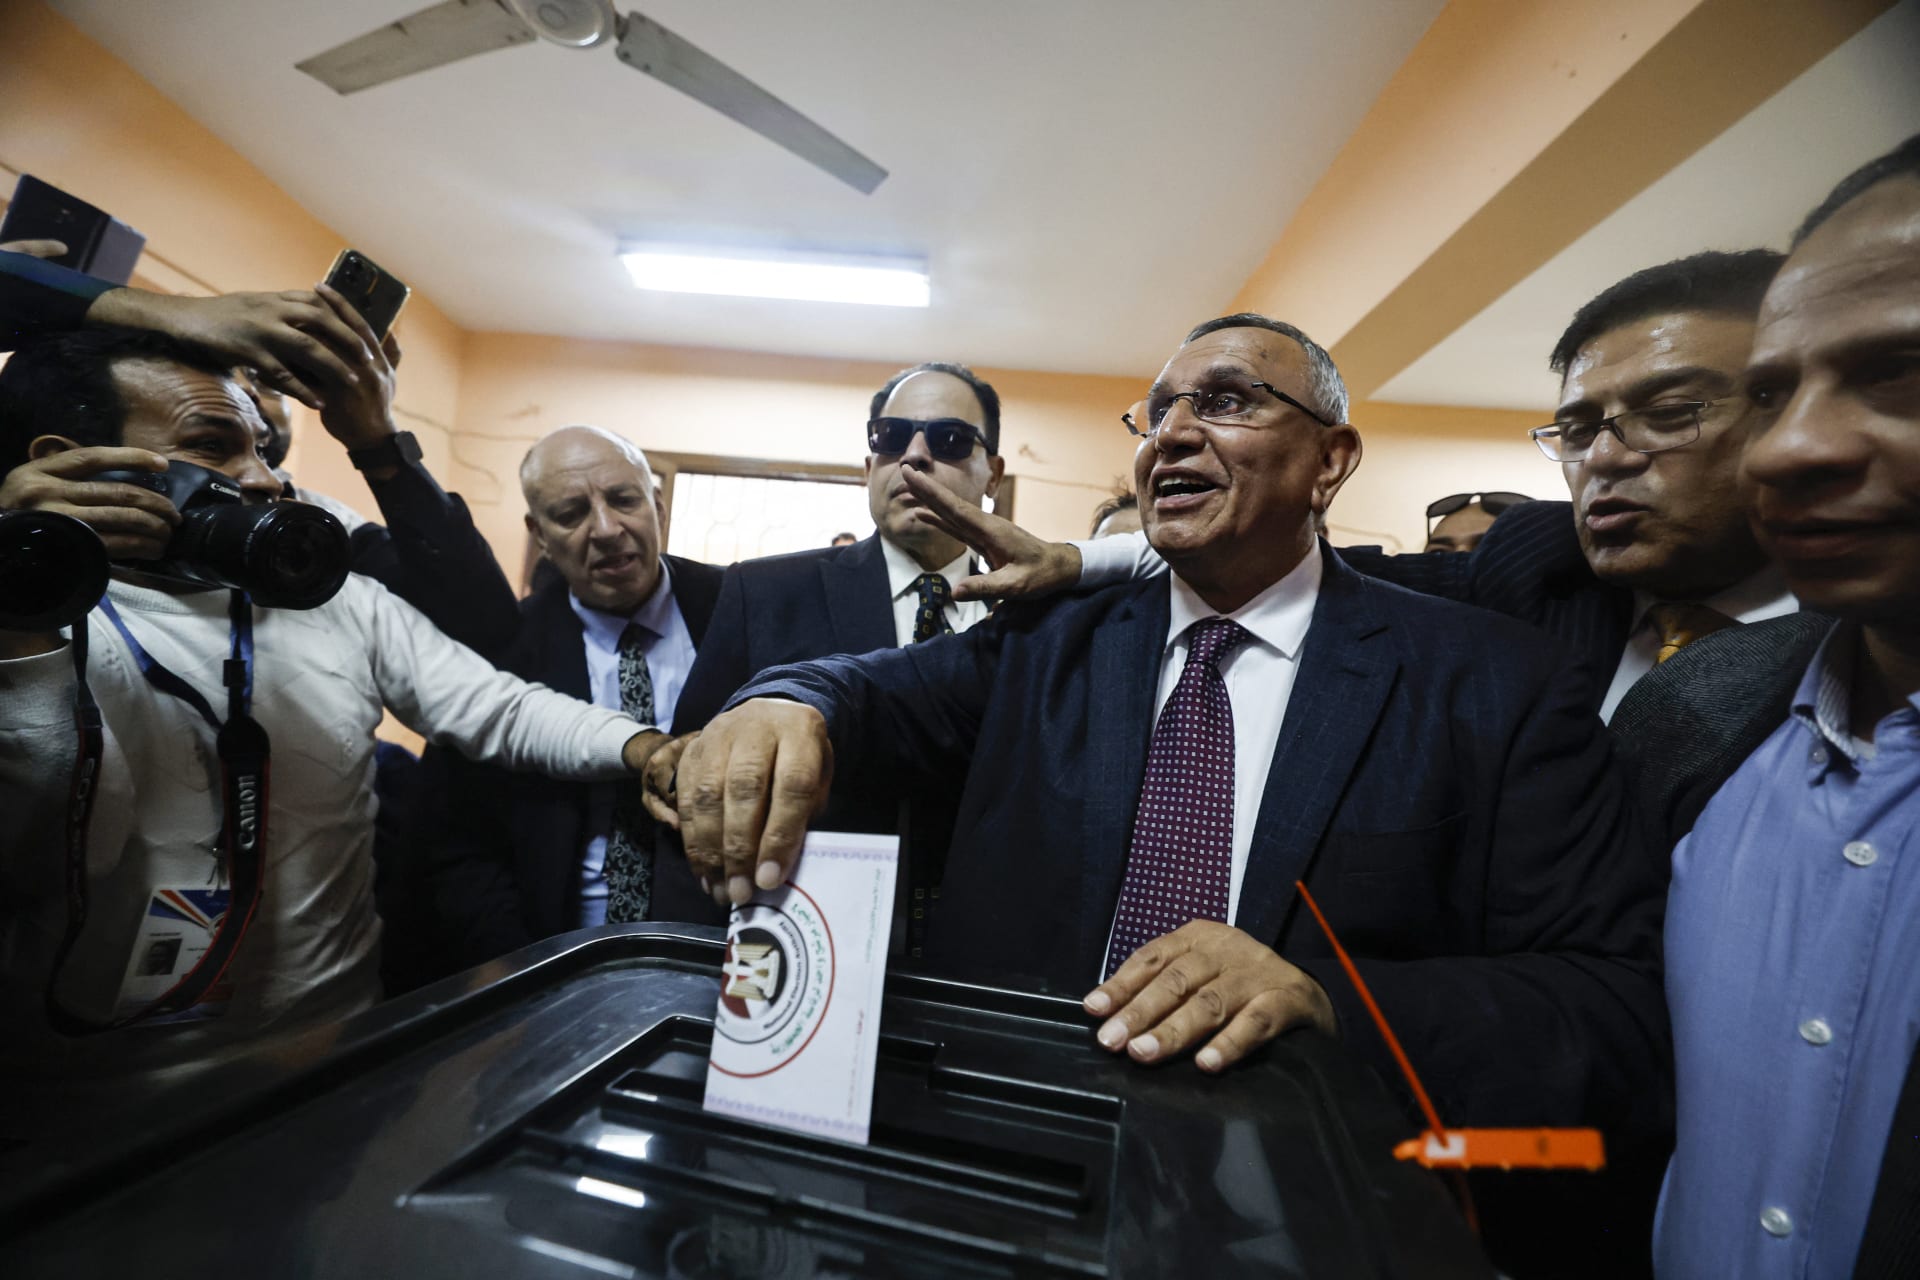 المرشح عن حزب الوفد عبدالسند يمامة يدلي بصوته في مركز اقتراع خلال الانتخابات الرئاسية بالقاهرة في 10 ديسمبر/كانون الأول 2023.